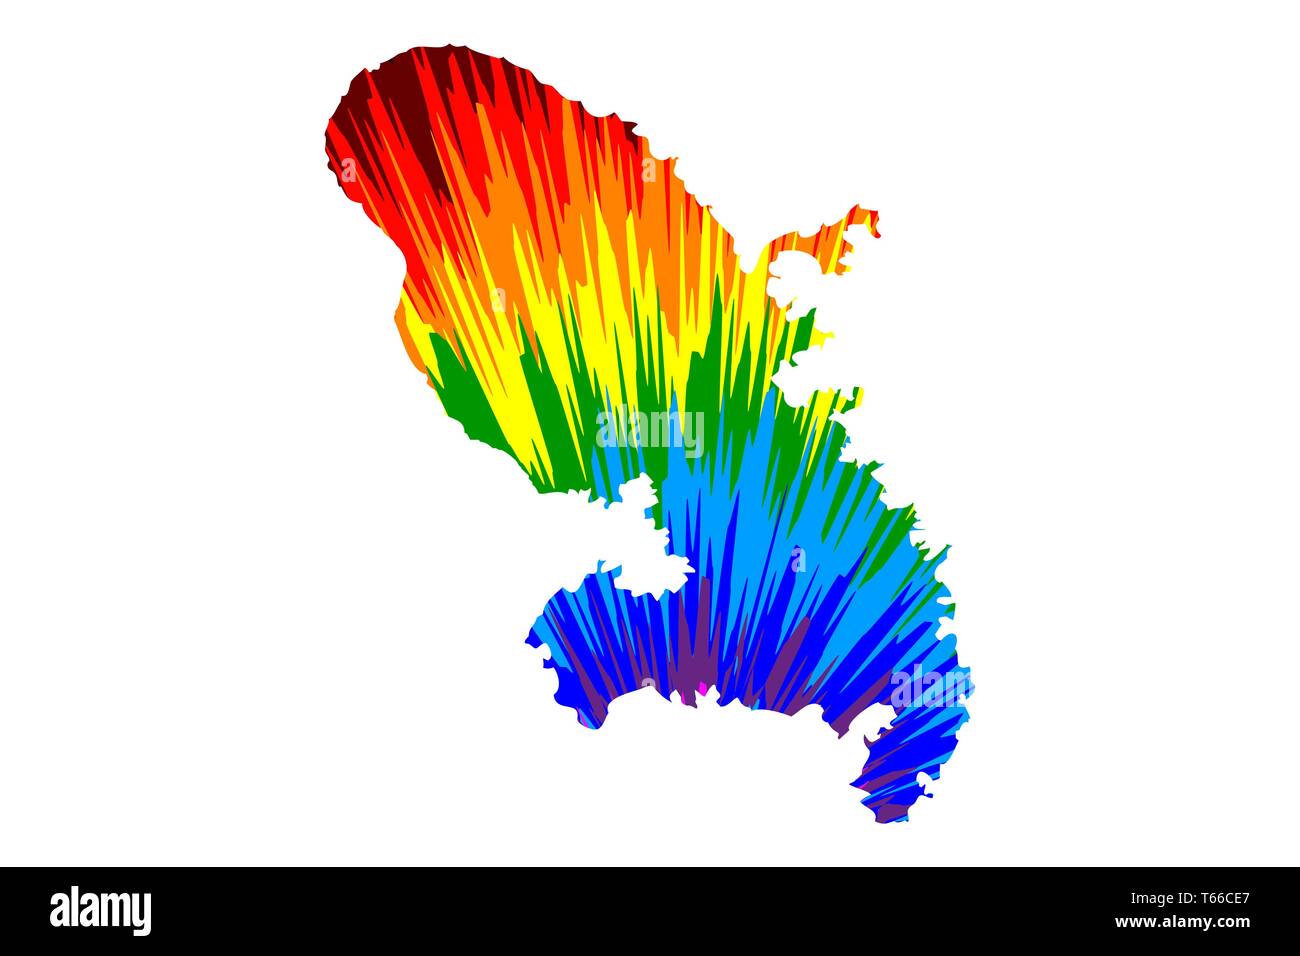 Martinique - carte est conçu rainbow abstract colorful pattern, la Martinique carte de color explosion, Illustration de Vecteur